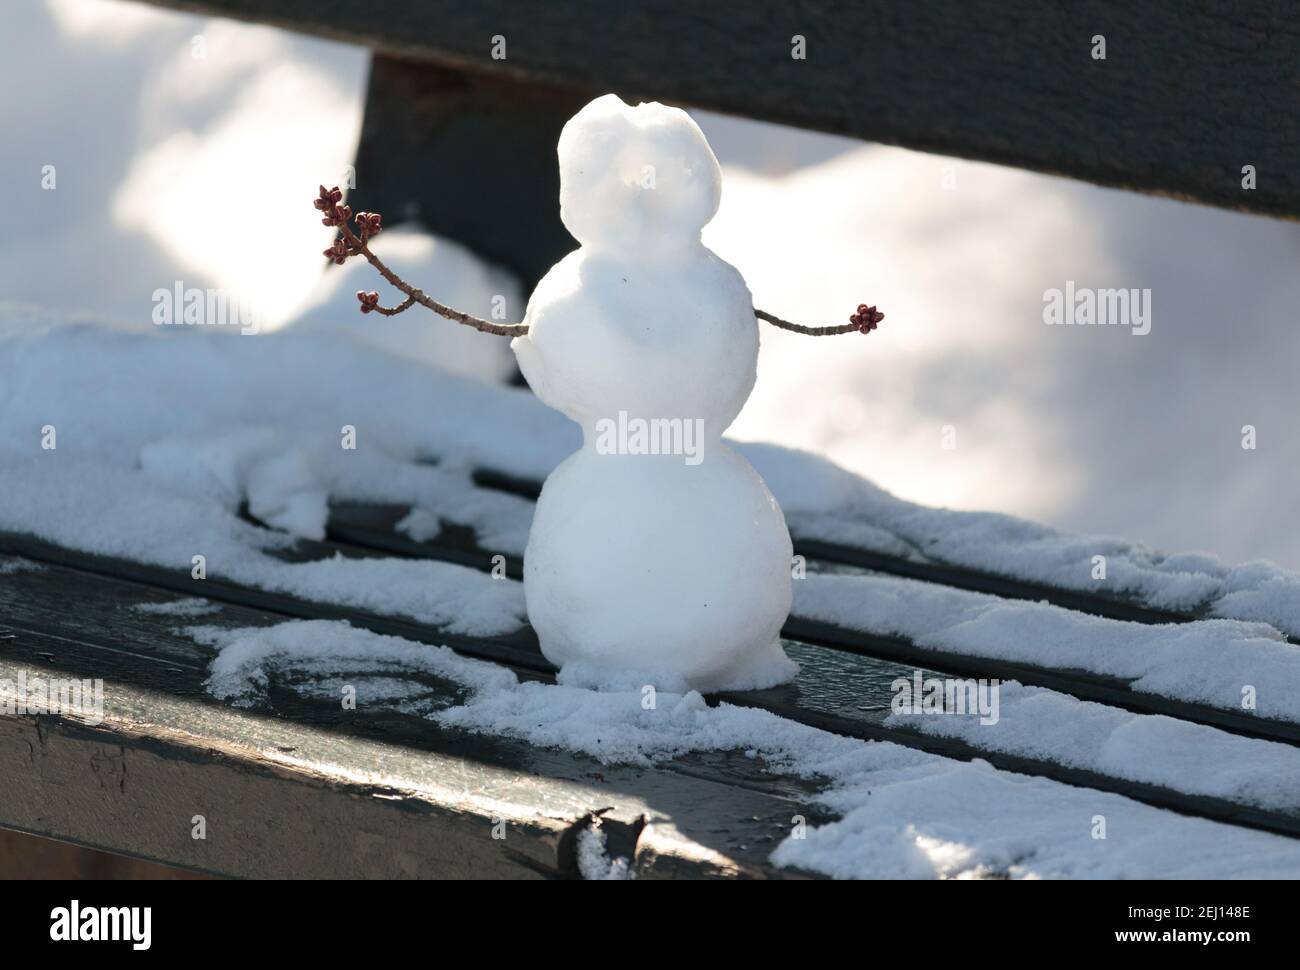 Ein winziger Schneemann, der auf einer Parkbank mit Zweigen gebaut wurde Für Arme, die von Schnee umgeben sind Stockfoto